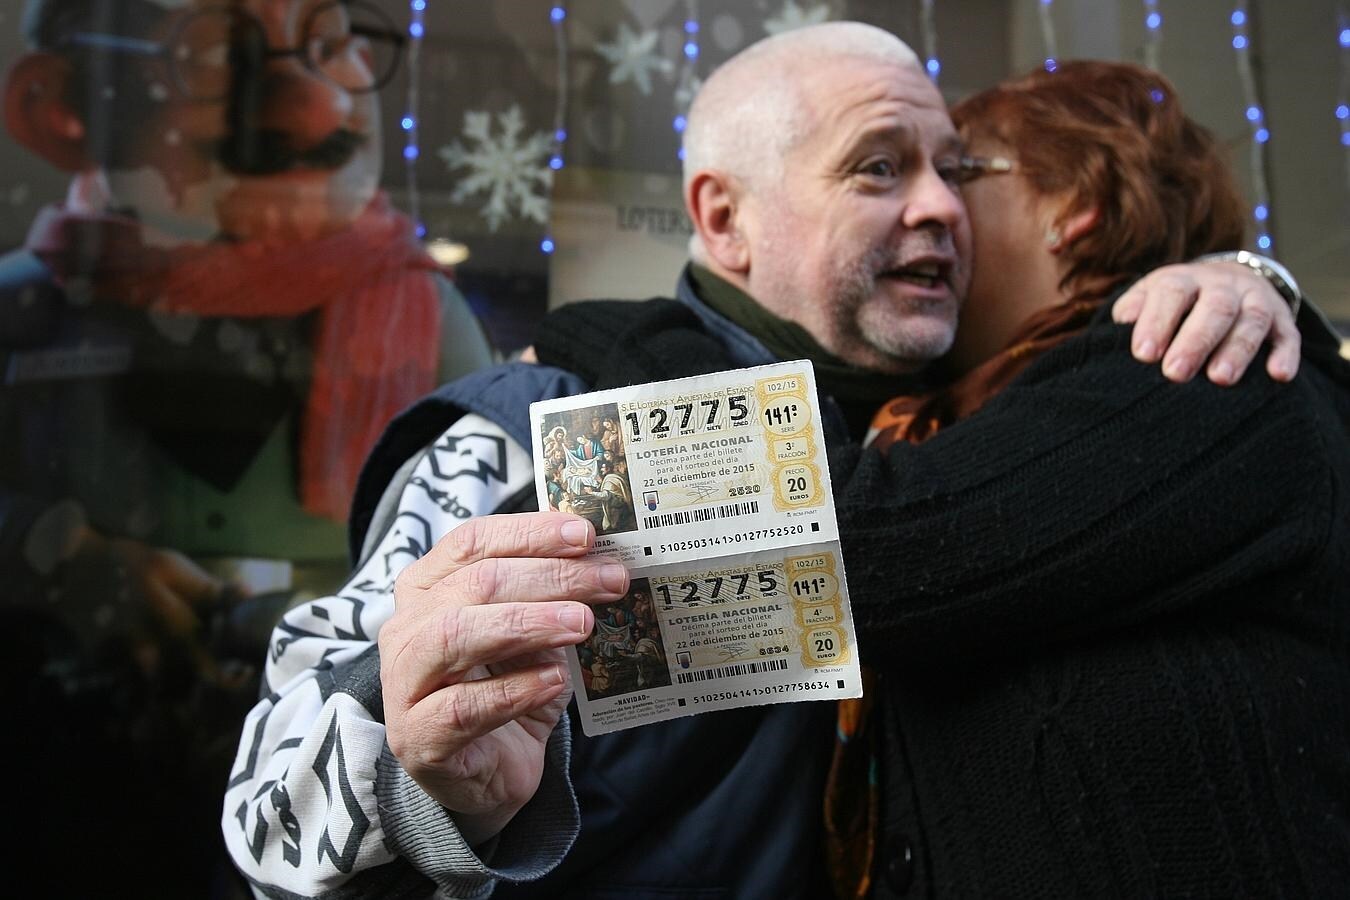 Dos agraciados con el segundo premio de la Loteria de Navidad, el 12.775, se abrazan mientras enseñan los décimos premiados.